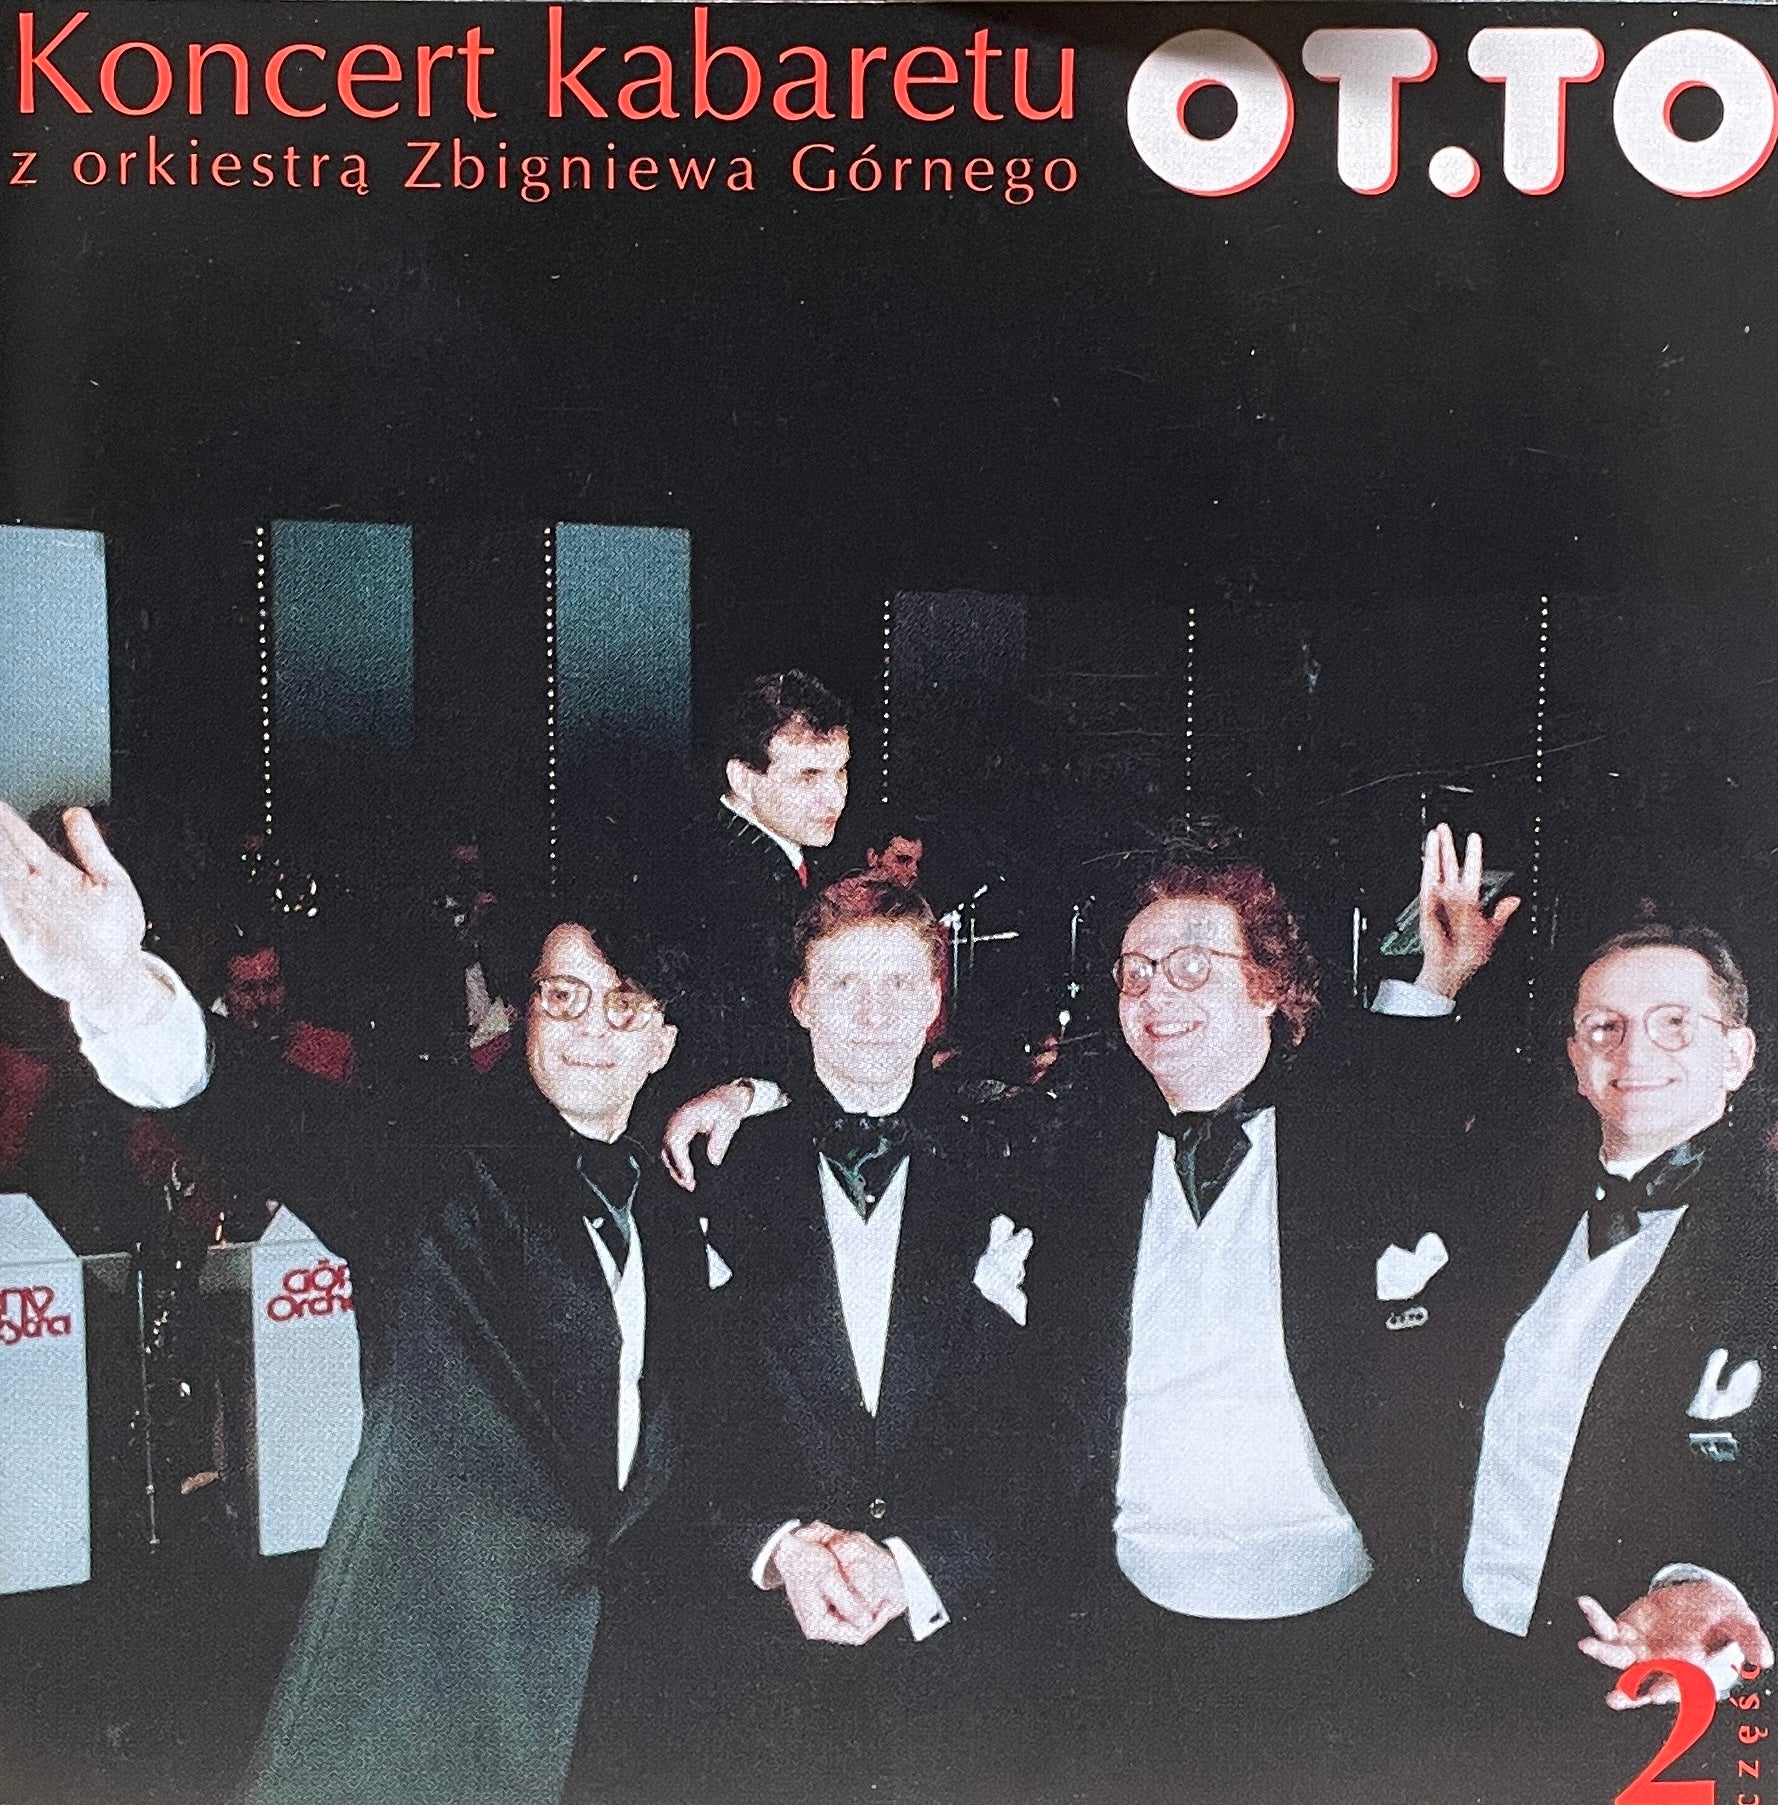 OT.TO - Koncert Kabaretu vol.1